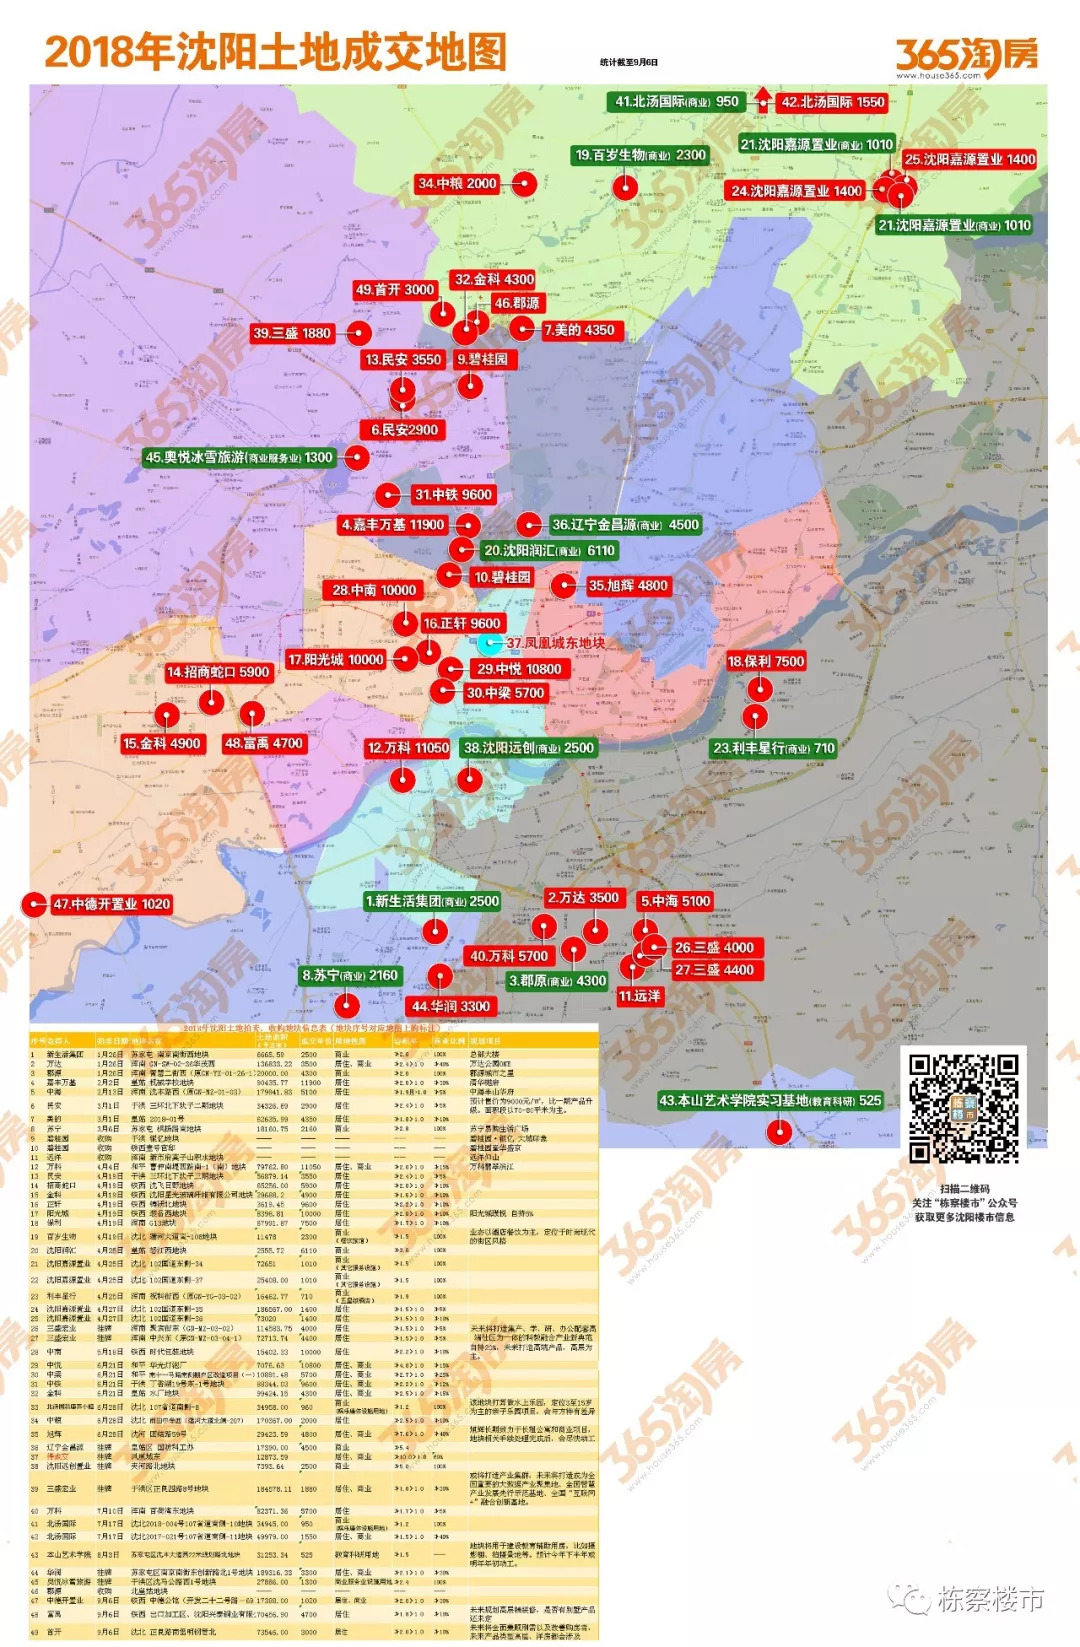 2018年沈阳土地交易地图(截至9月6日) 有个区至今挂零